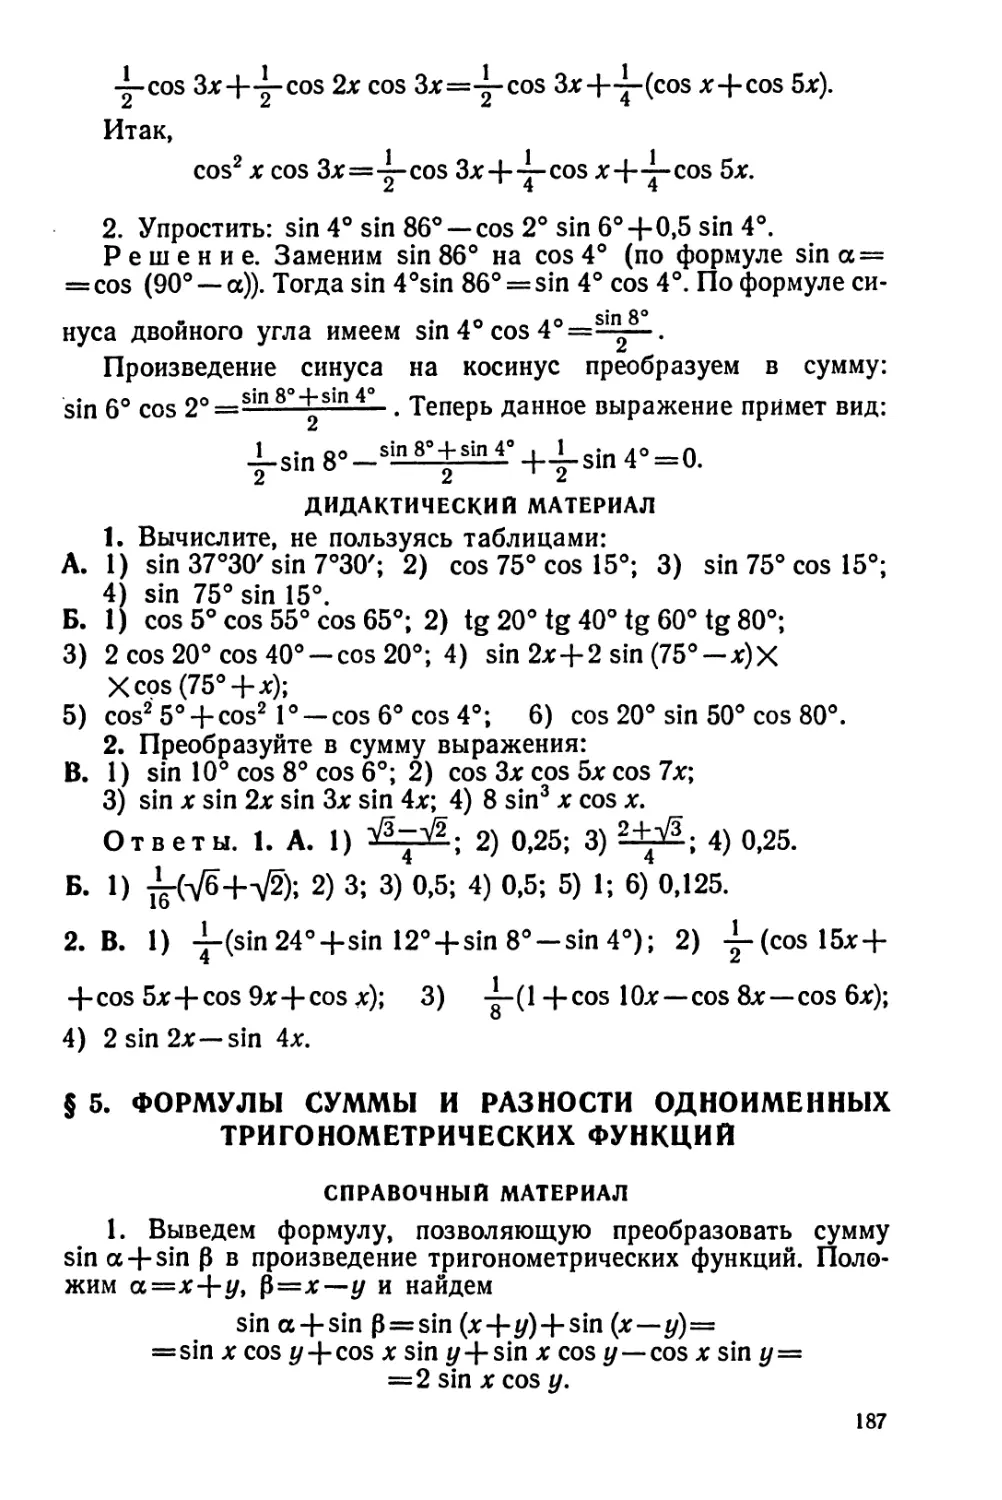 Формулы суммы и разности одноименных тригонометрических функций